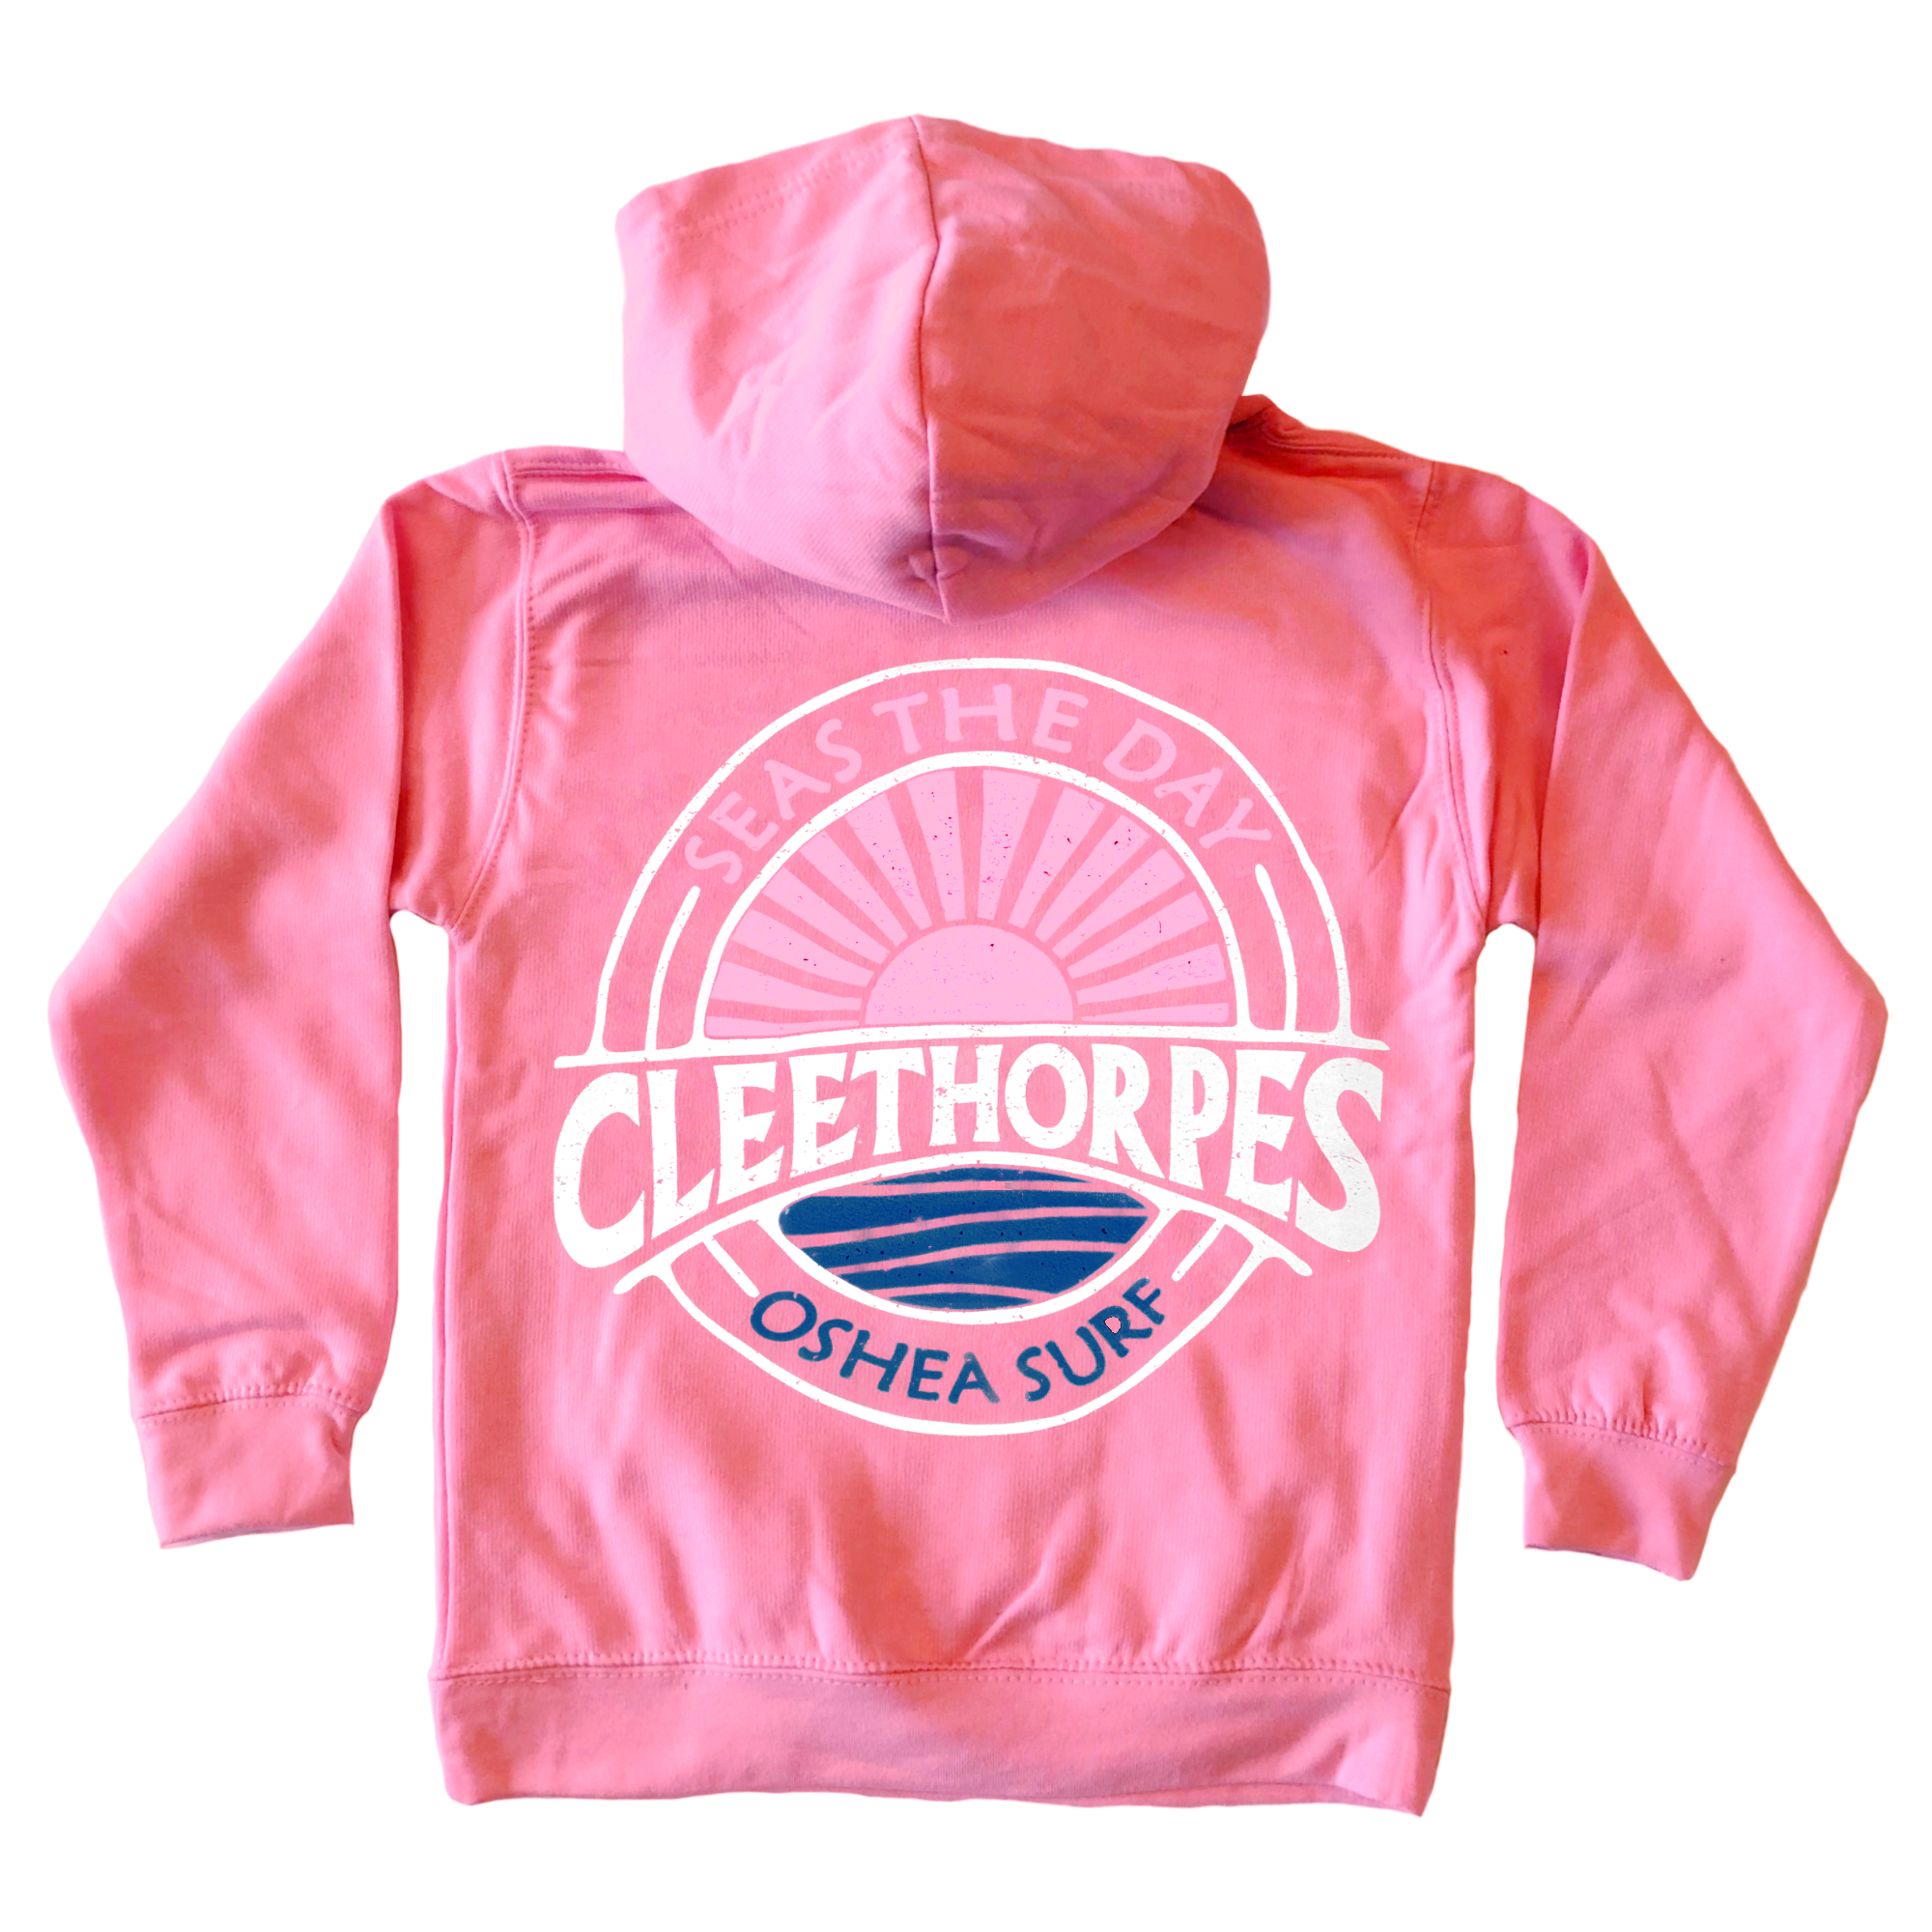 Cleethorpes Pink Kids Hoody - SEAS THE DAY